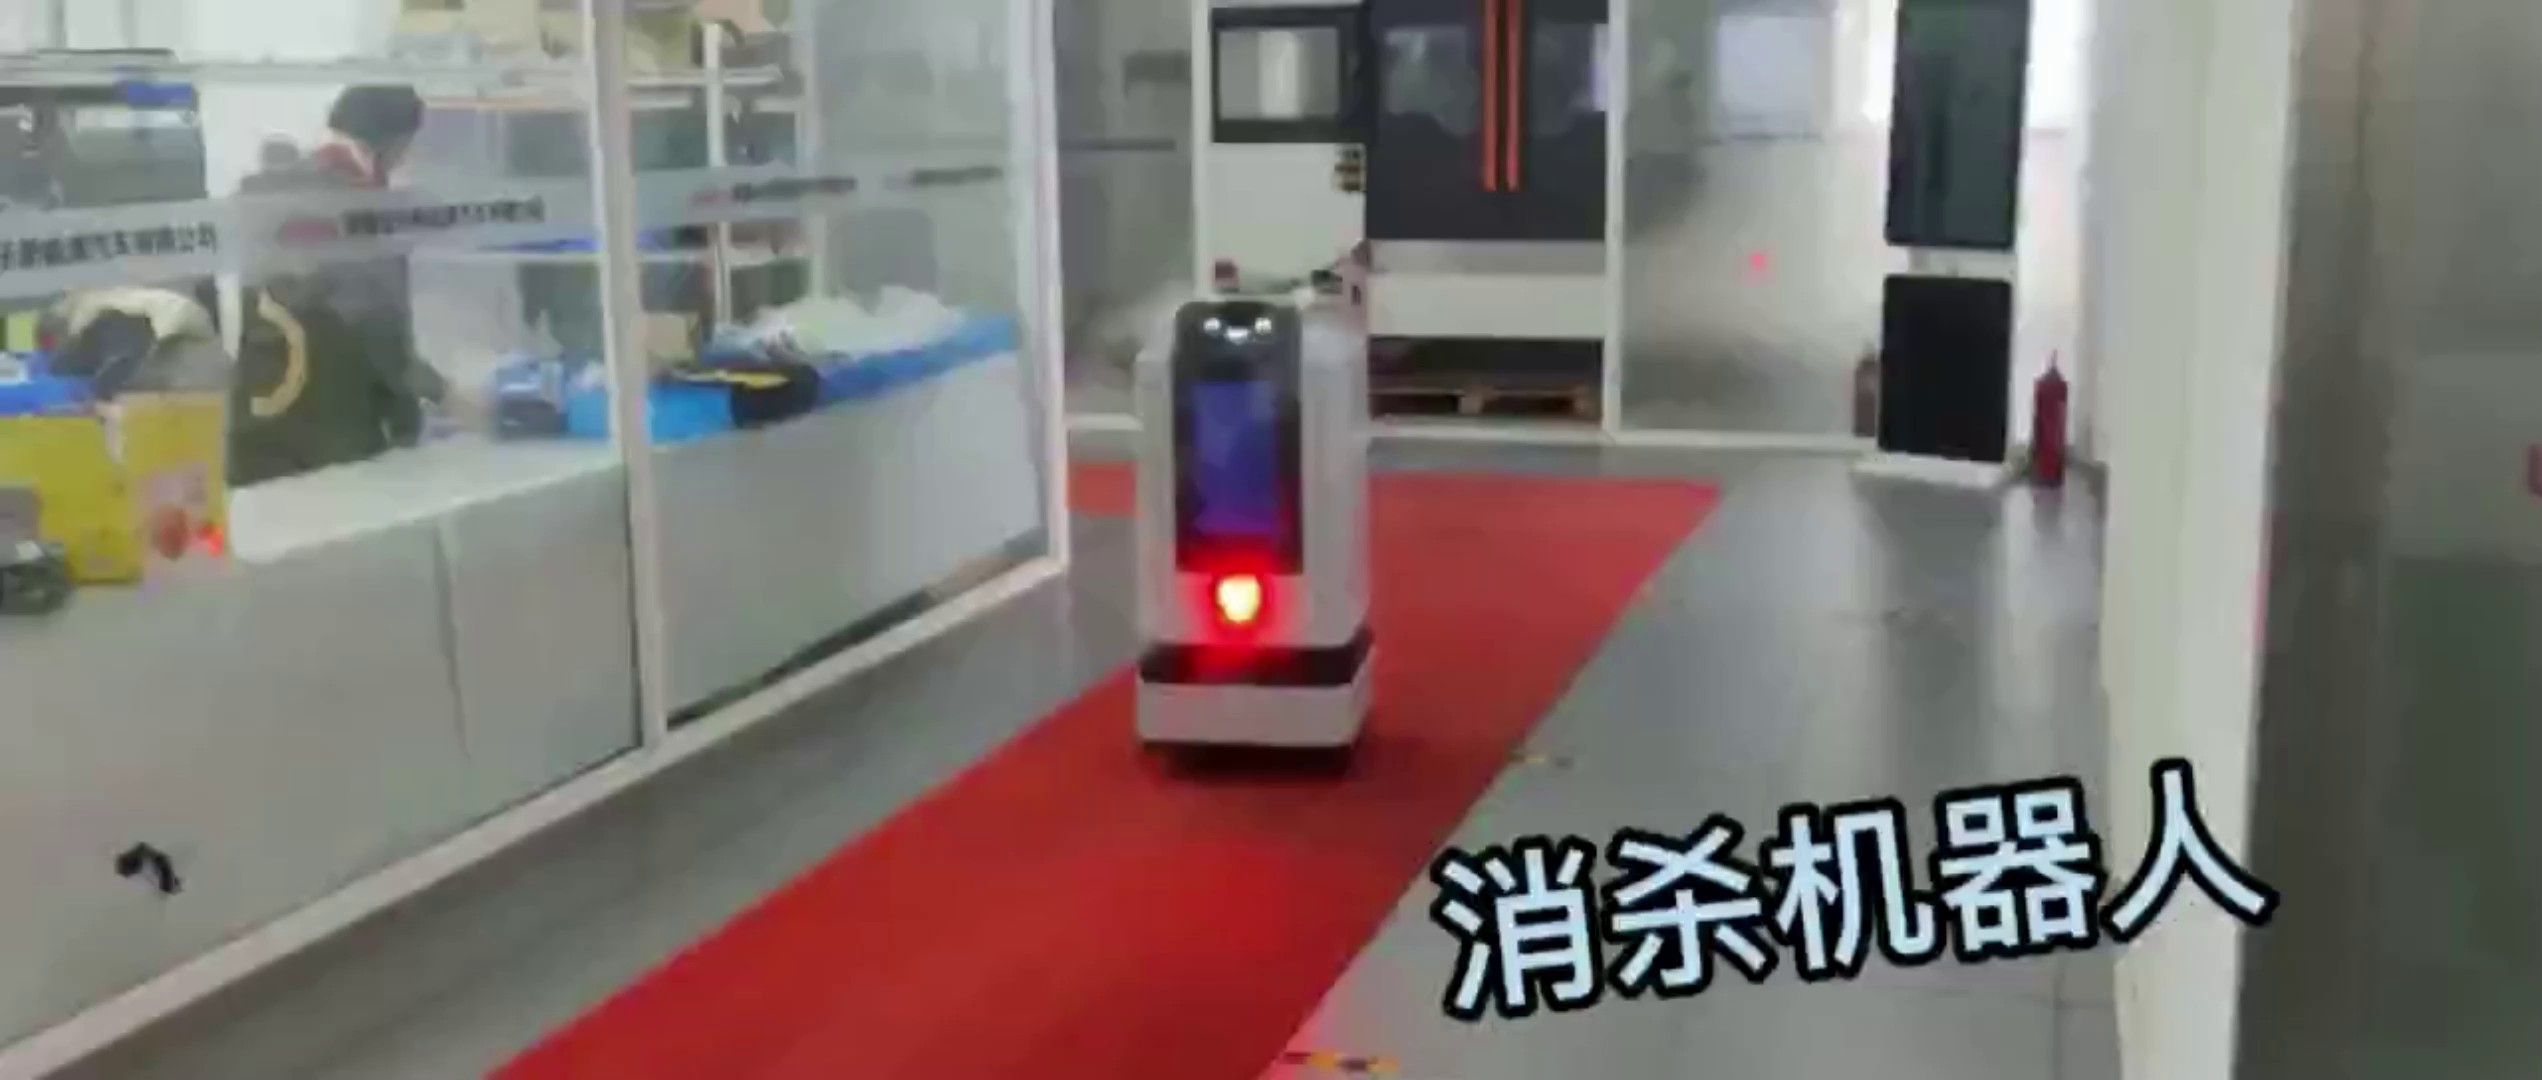 上海机器人哪里有,机器人